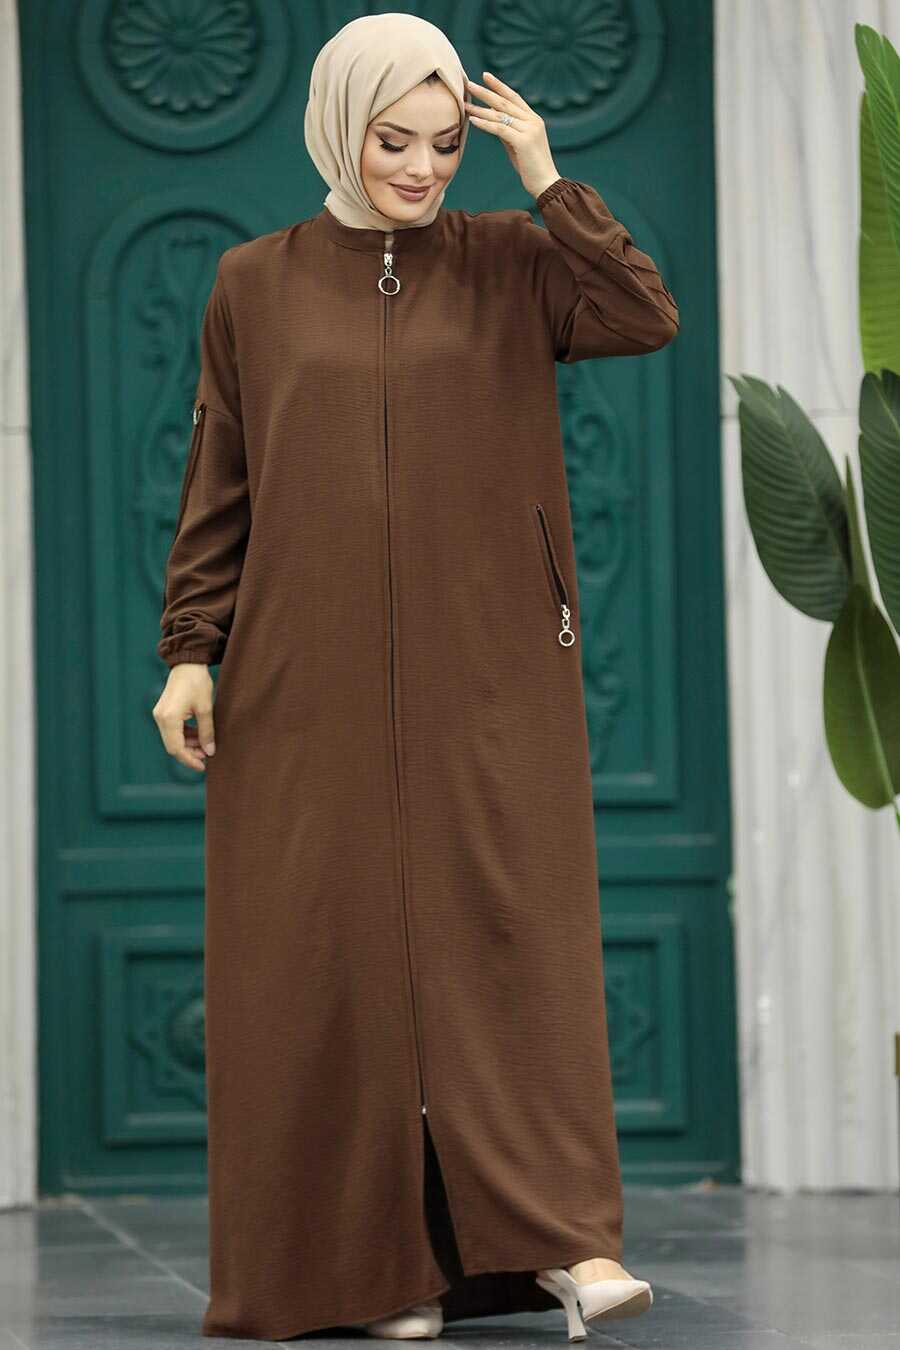 Neva Style - Brown Muslim Turkish Abaya 11070KH